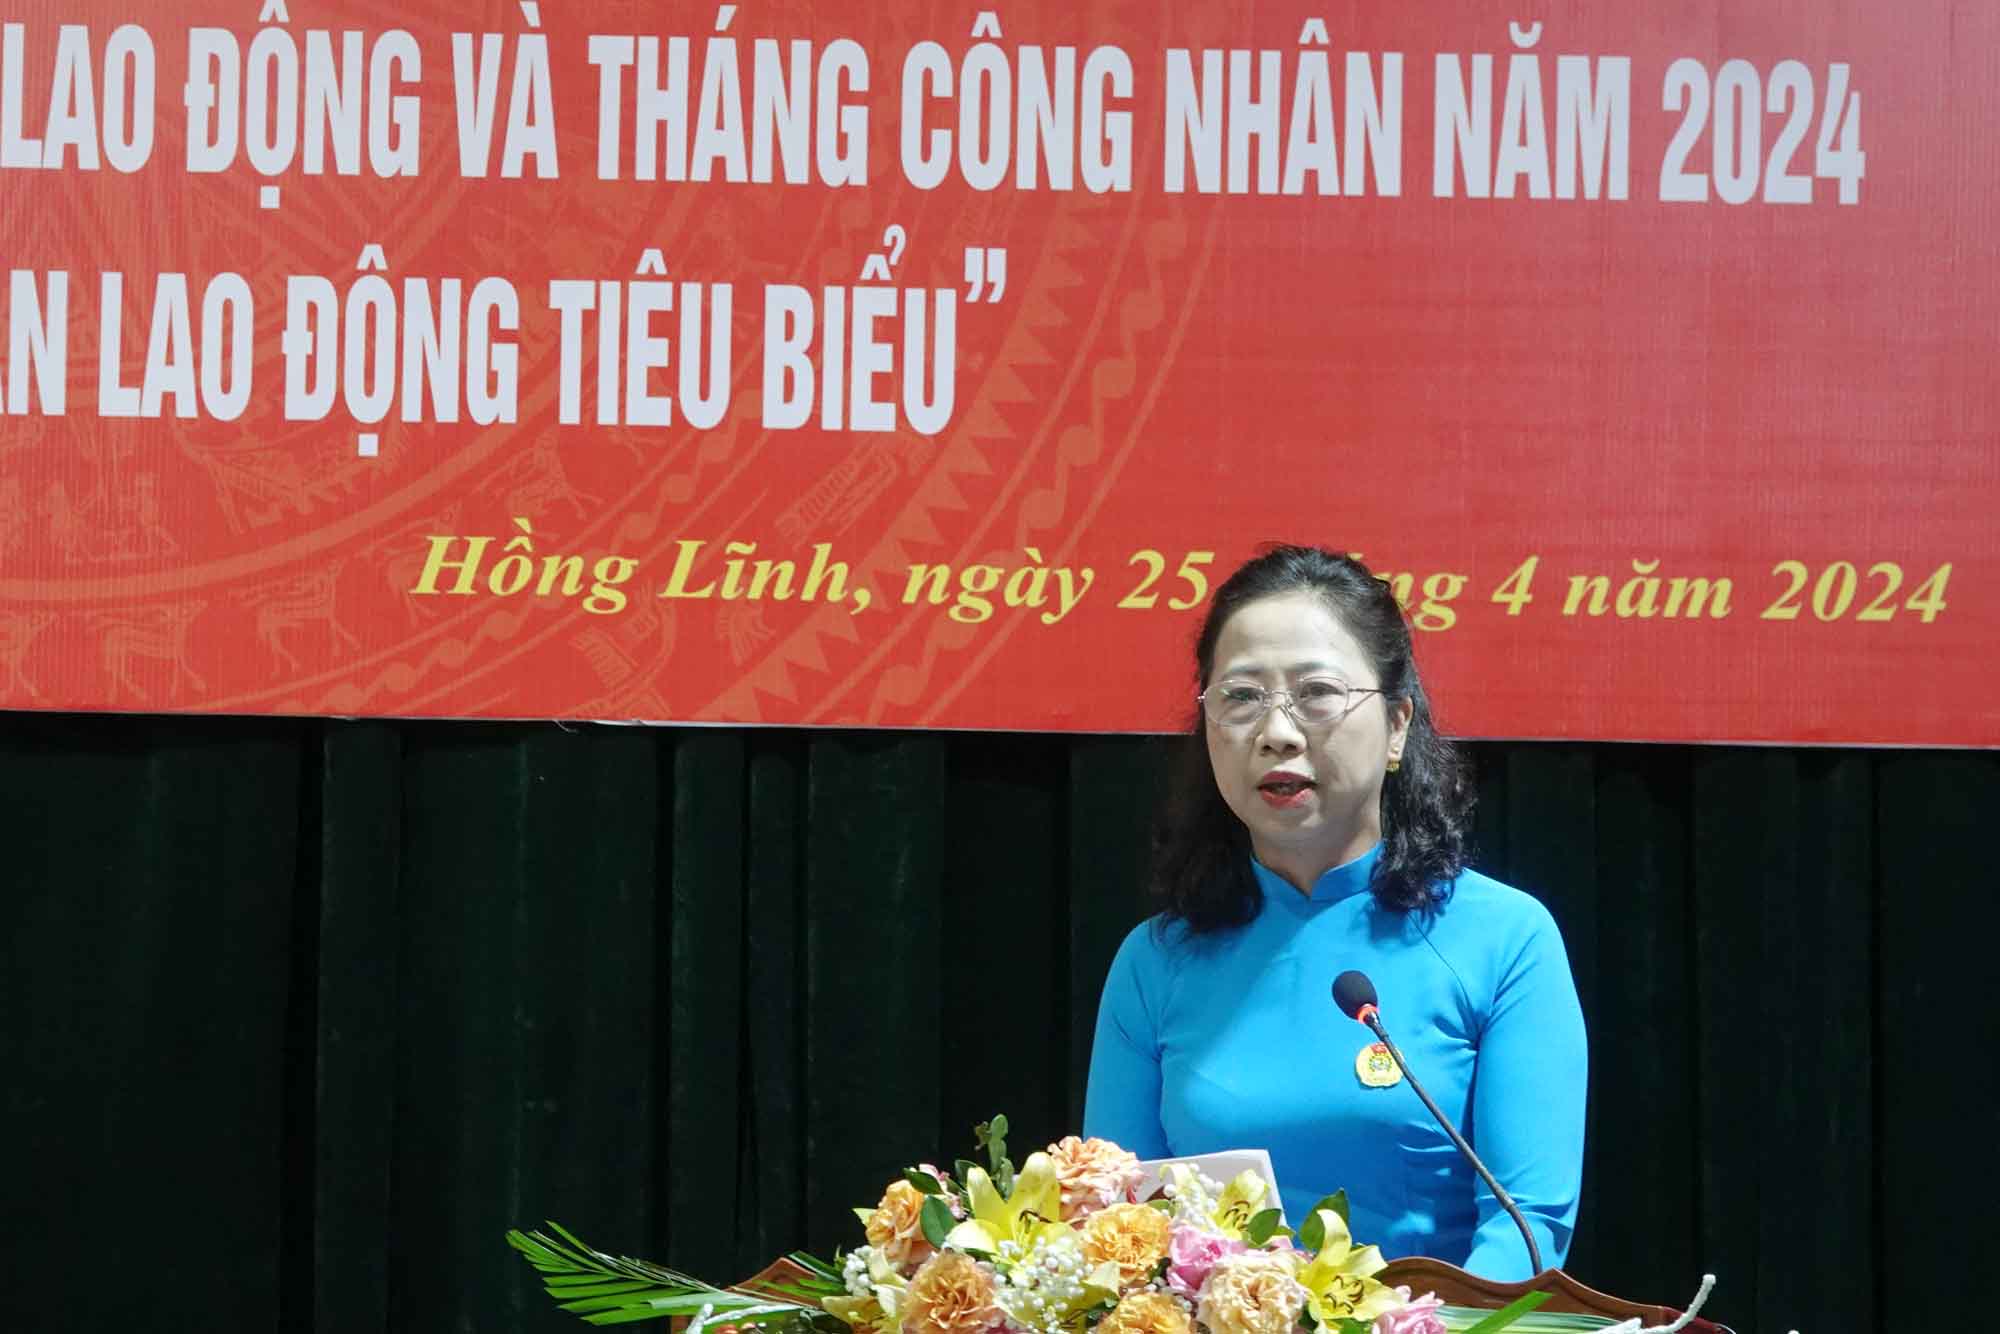 Bà Nguyễn Thu Hương - Chủ tịch Liên đoàn Lao động thị xã Hồng Lĩnh phát biểu tại buổi lễ. Ảnh: Trần Tuấn.